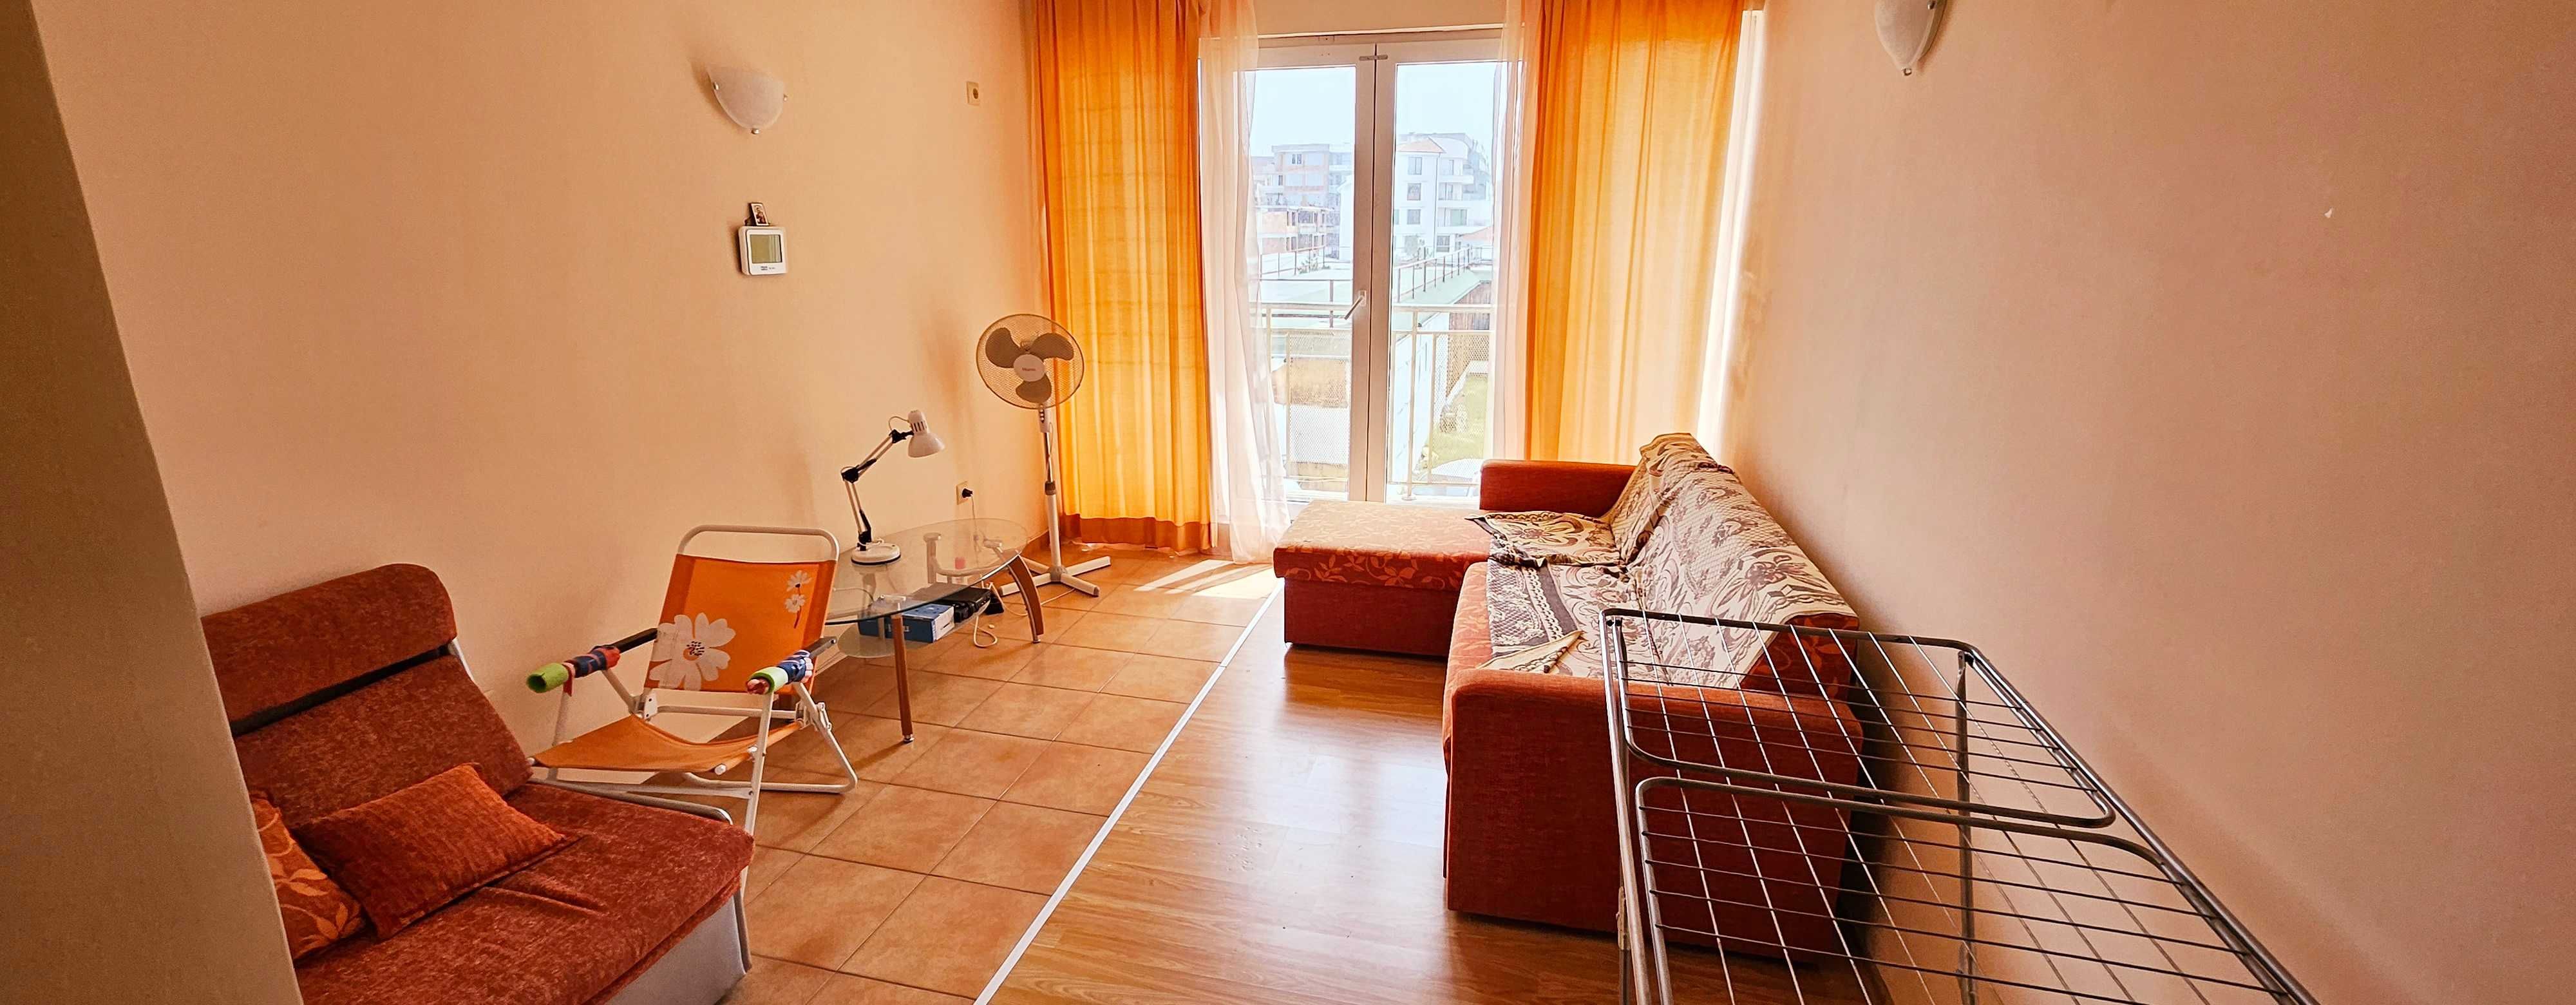 Тристаен апартамент без такса поддръжка в Поморие